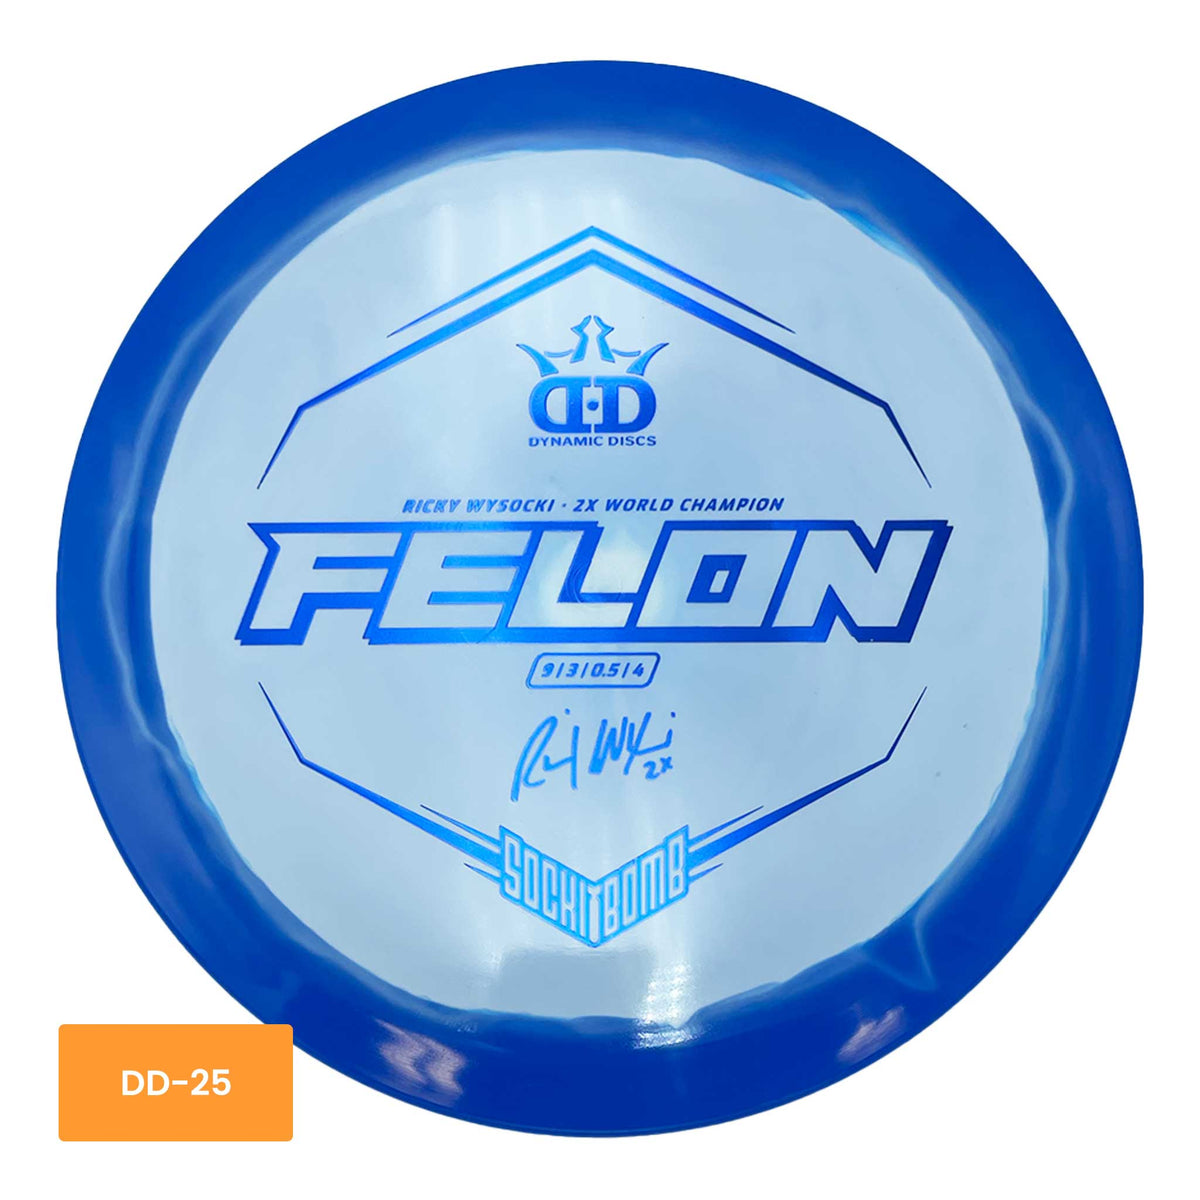 Dynamic Discs Fuzion Orbit Felon Ricky Wysocki Sockibomb fairway driver - Blue